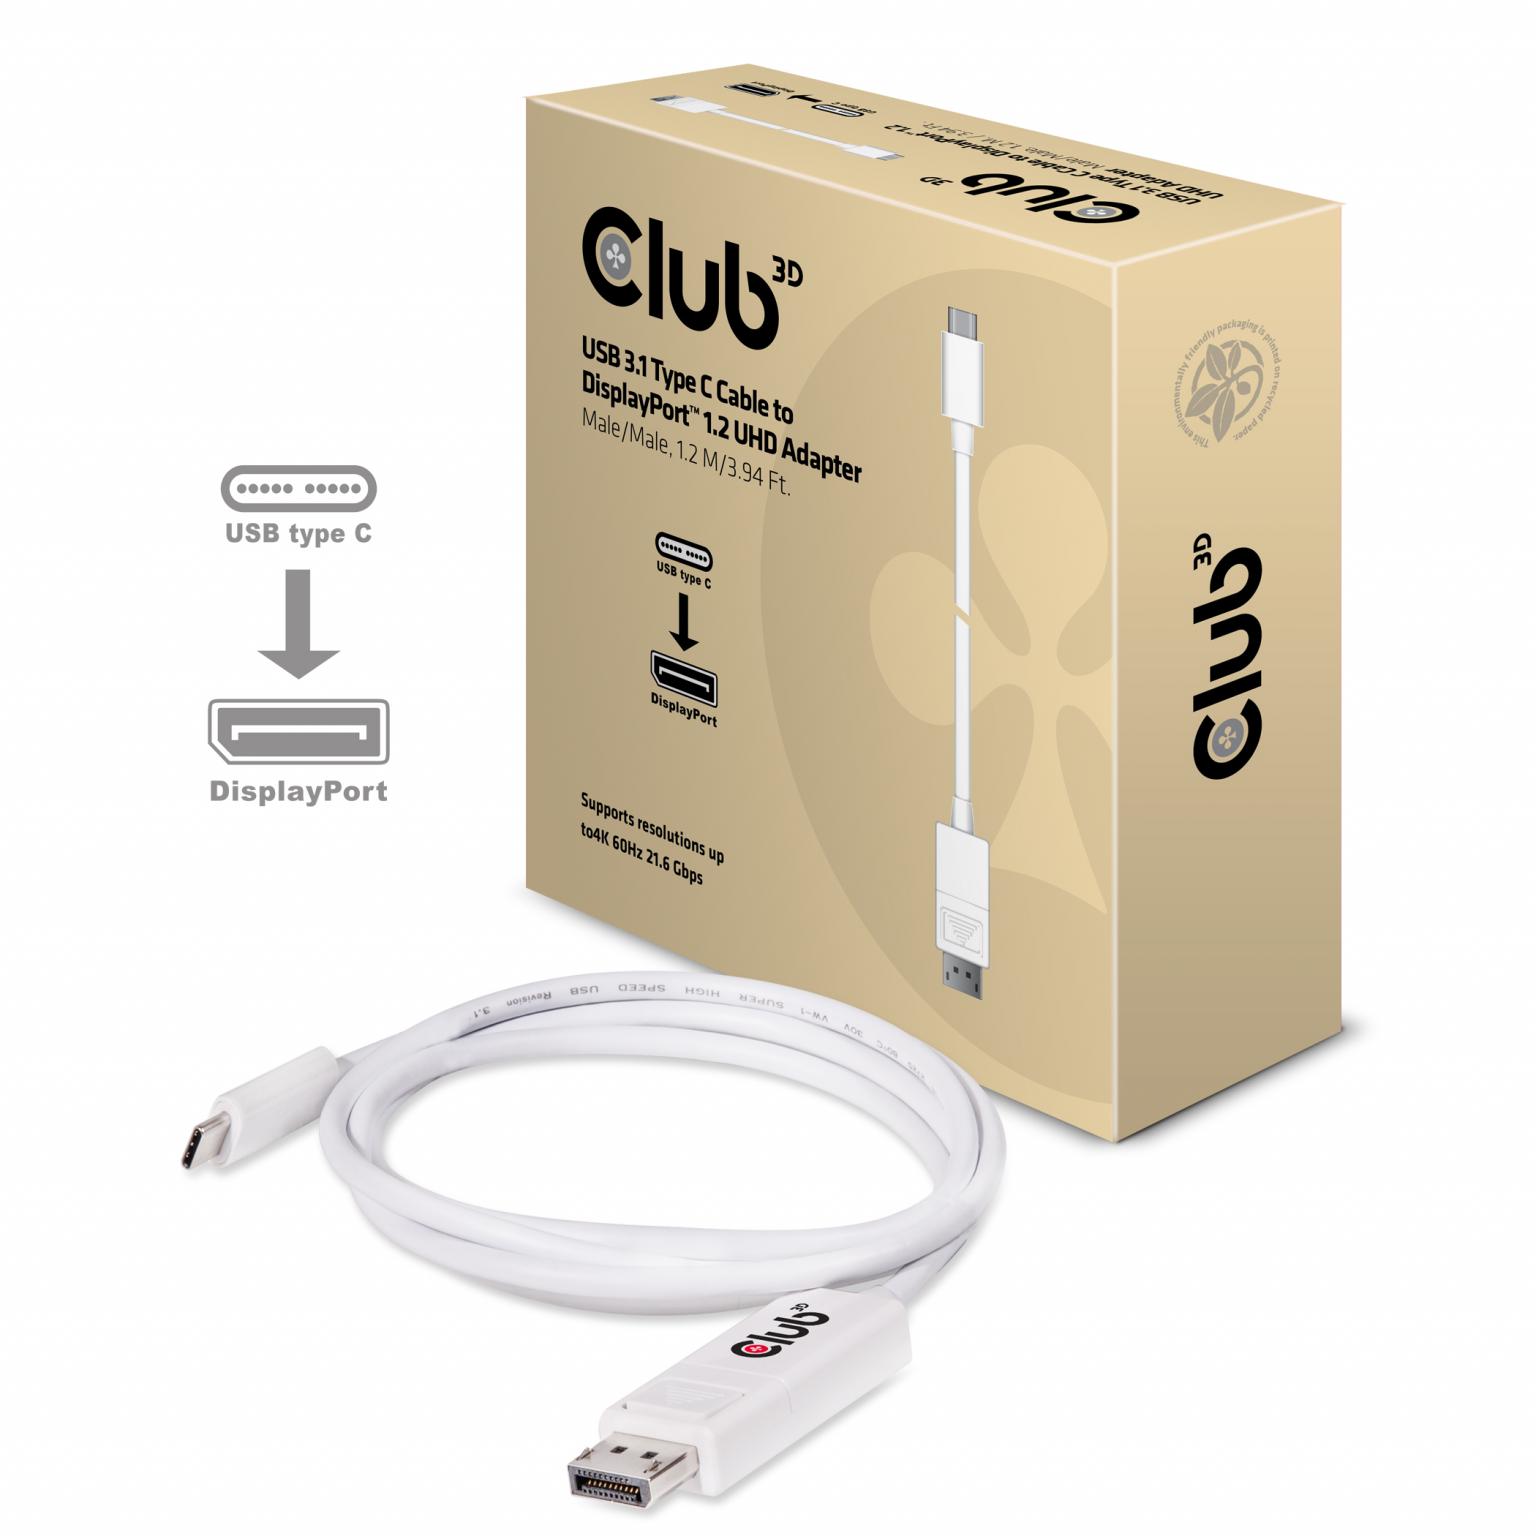 USB-Adapter - Club 3D